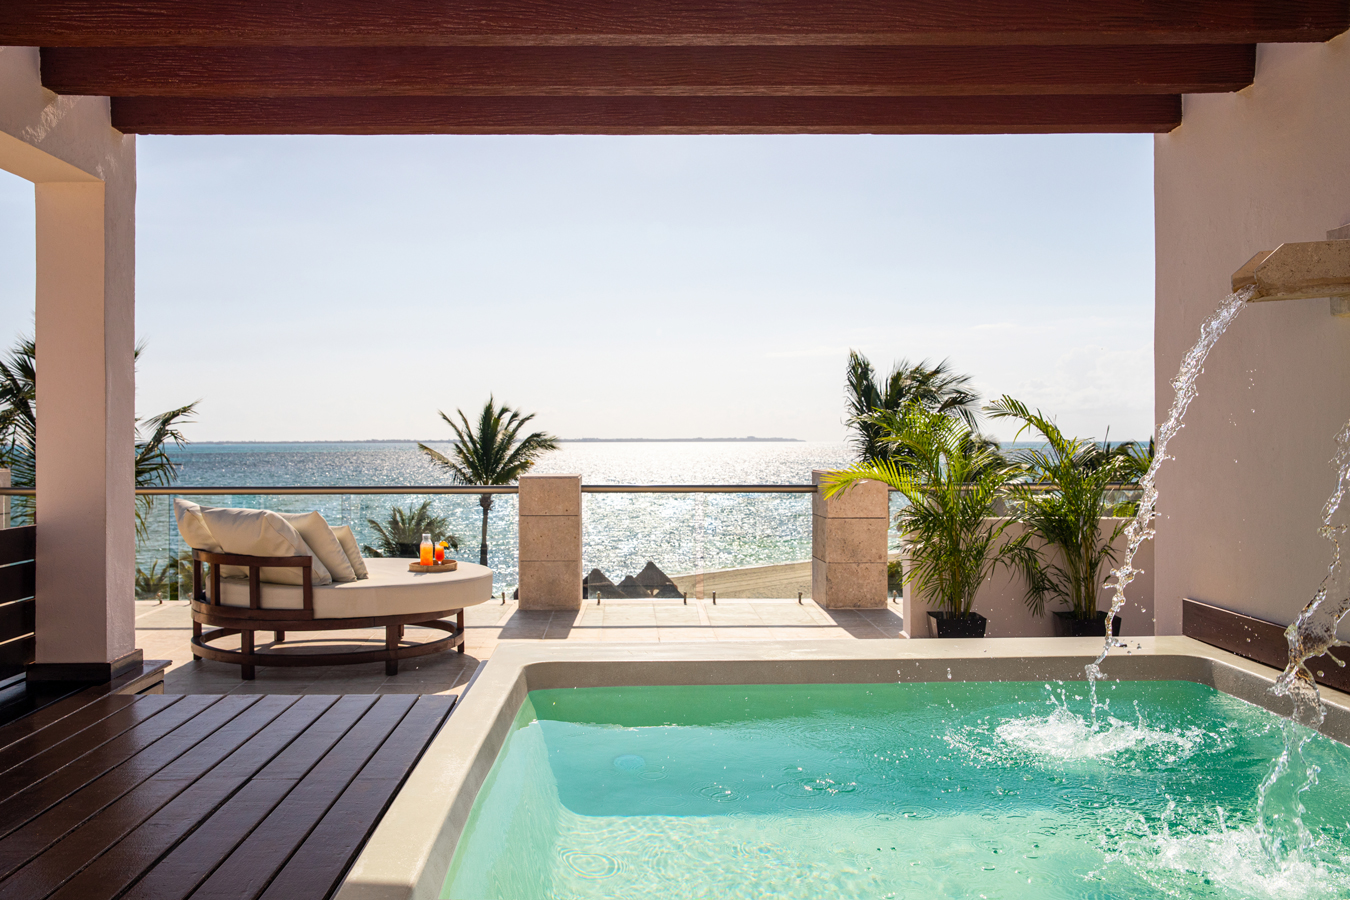 Enjoy a honeymoon un a luxe resort suite